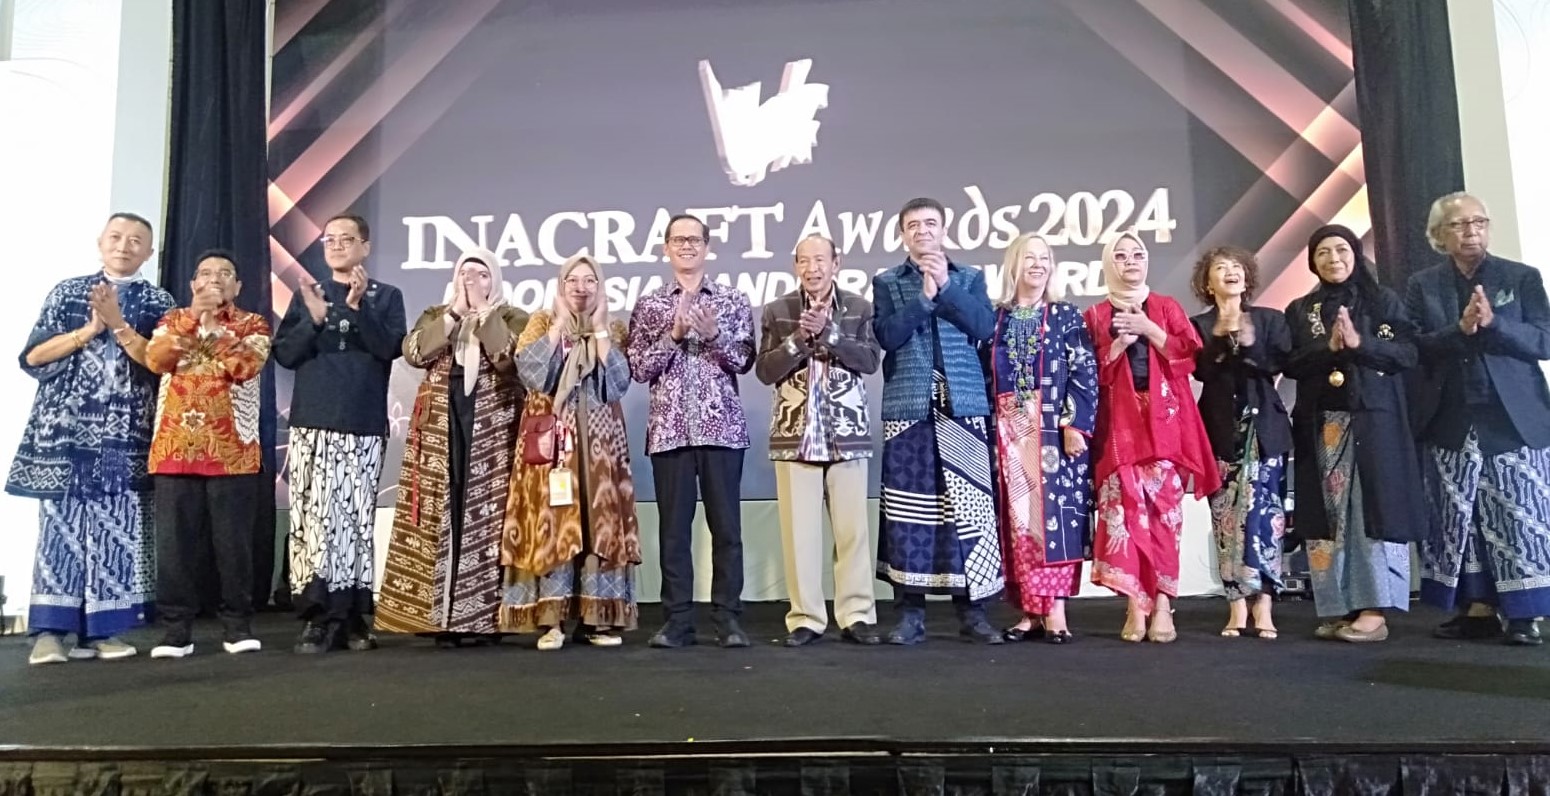 Sekretaris BKPerdag menjadi Juri Inacraft Award 2024